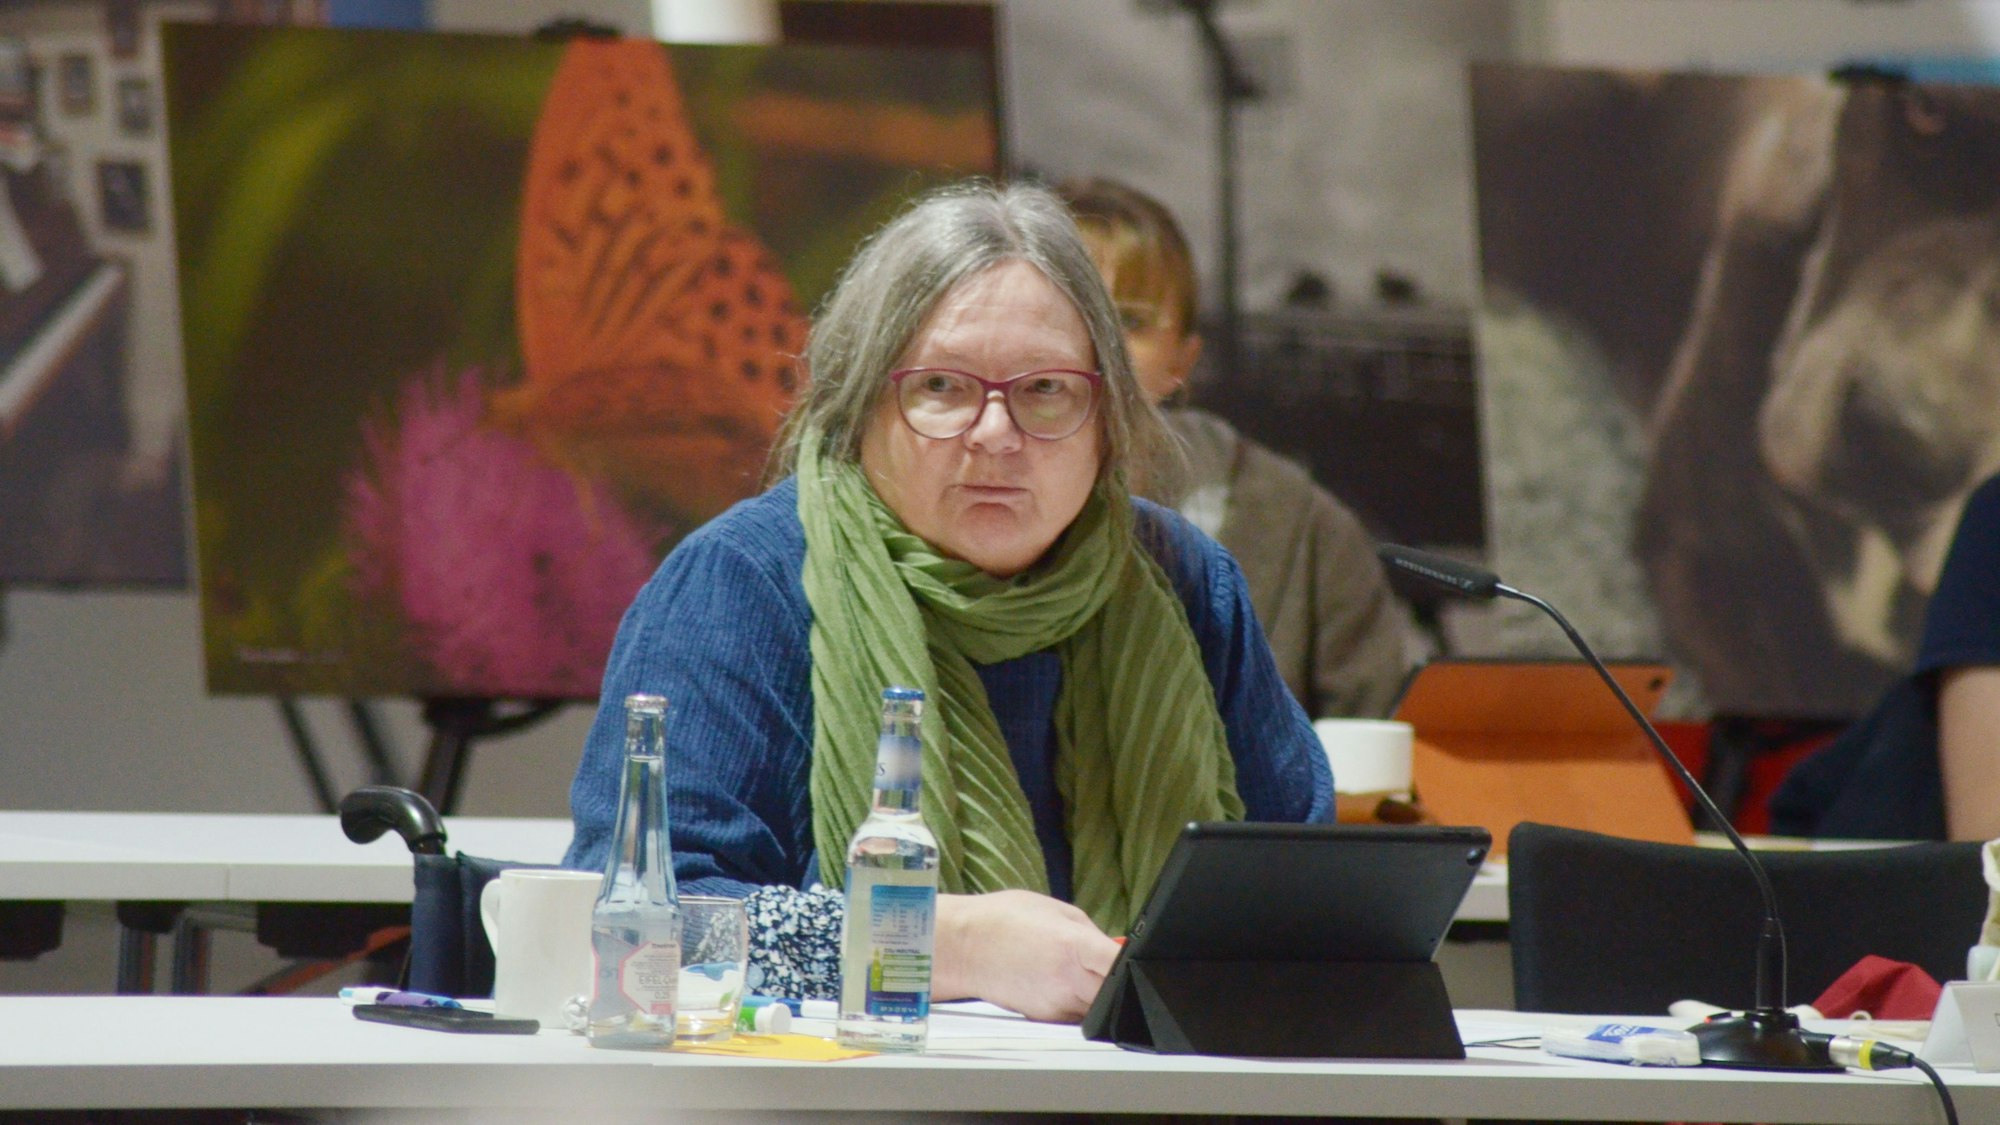 Dorothee Kroll, Fraktionsvorsitzende von Bündnis 90/Die Grünen, in der Sitzung des Euskirchener Stadtrats im Wohnraum in der Alten Tuchfabrik